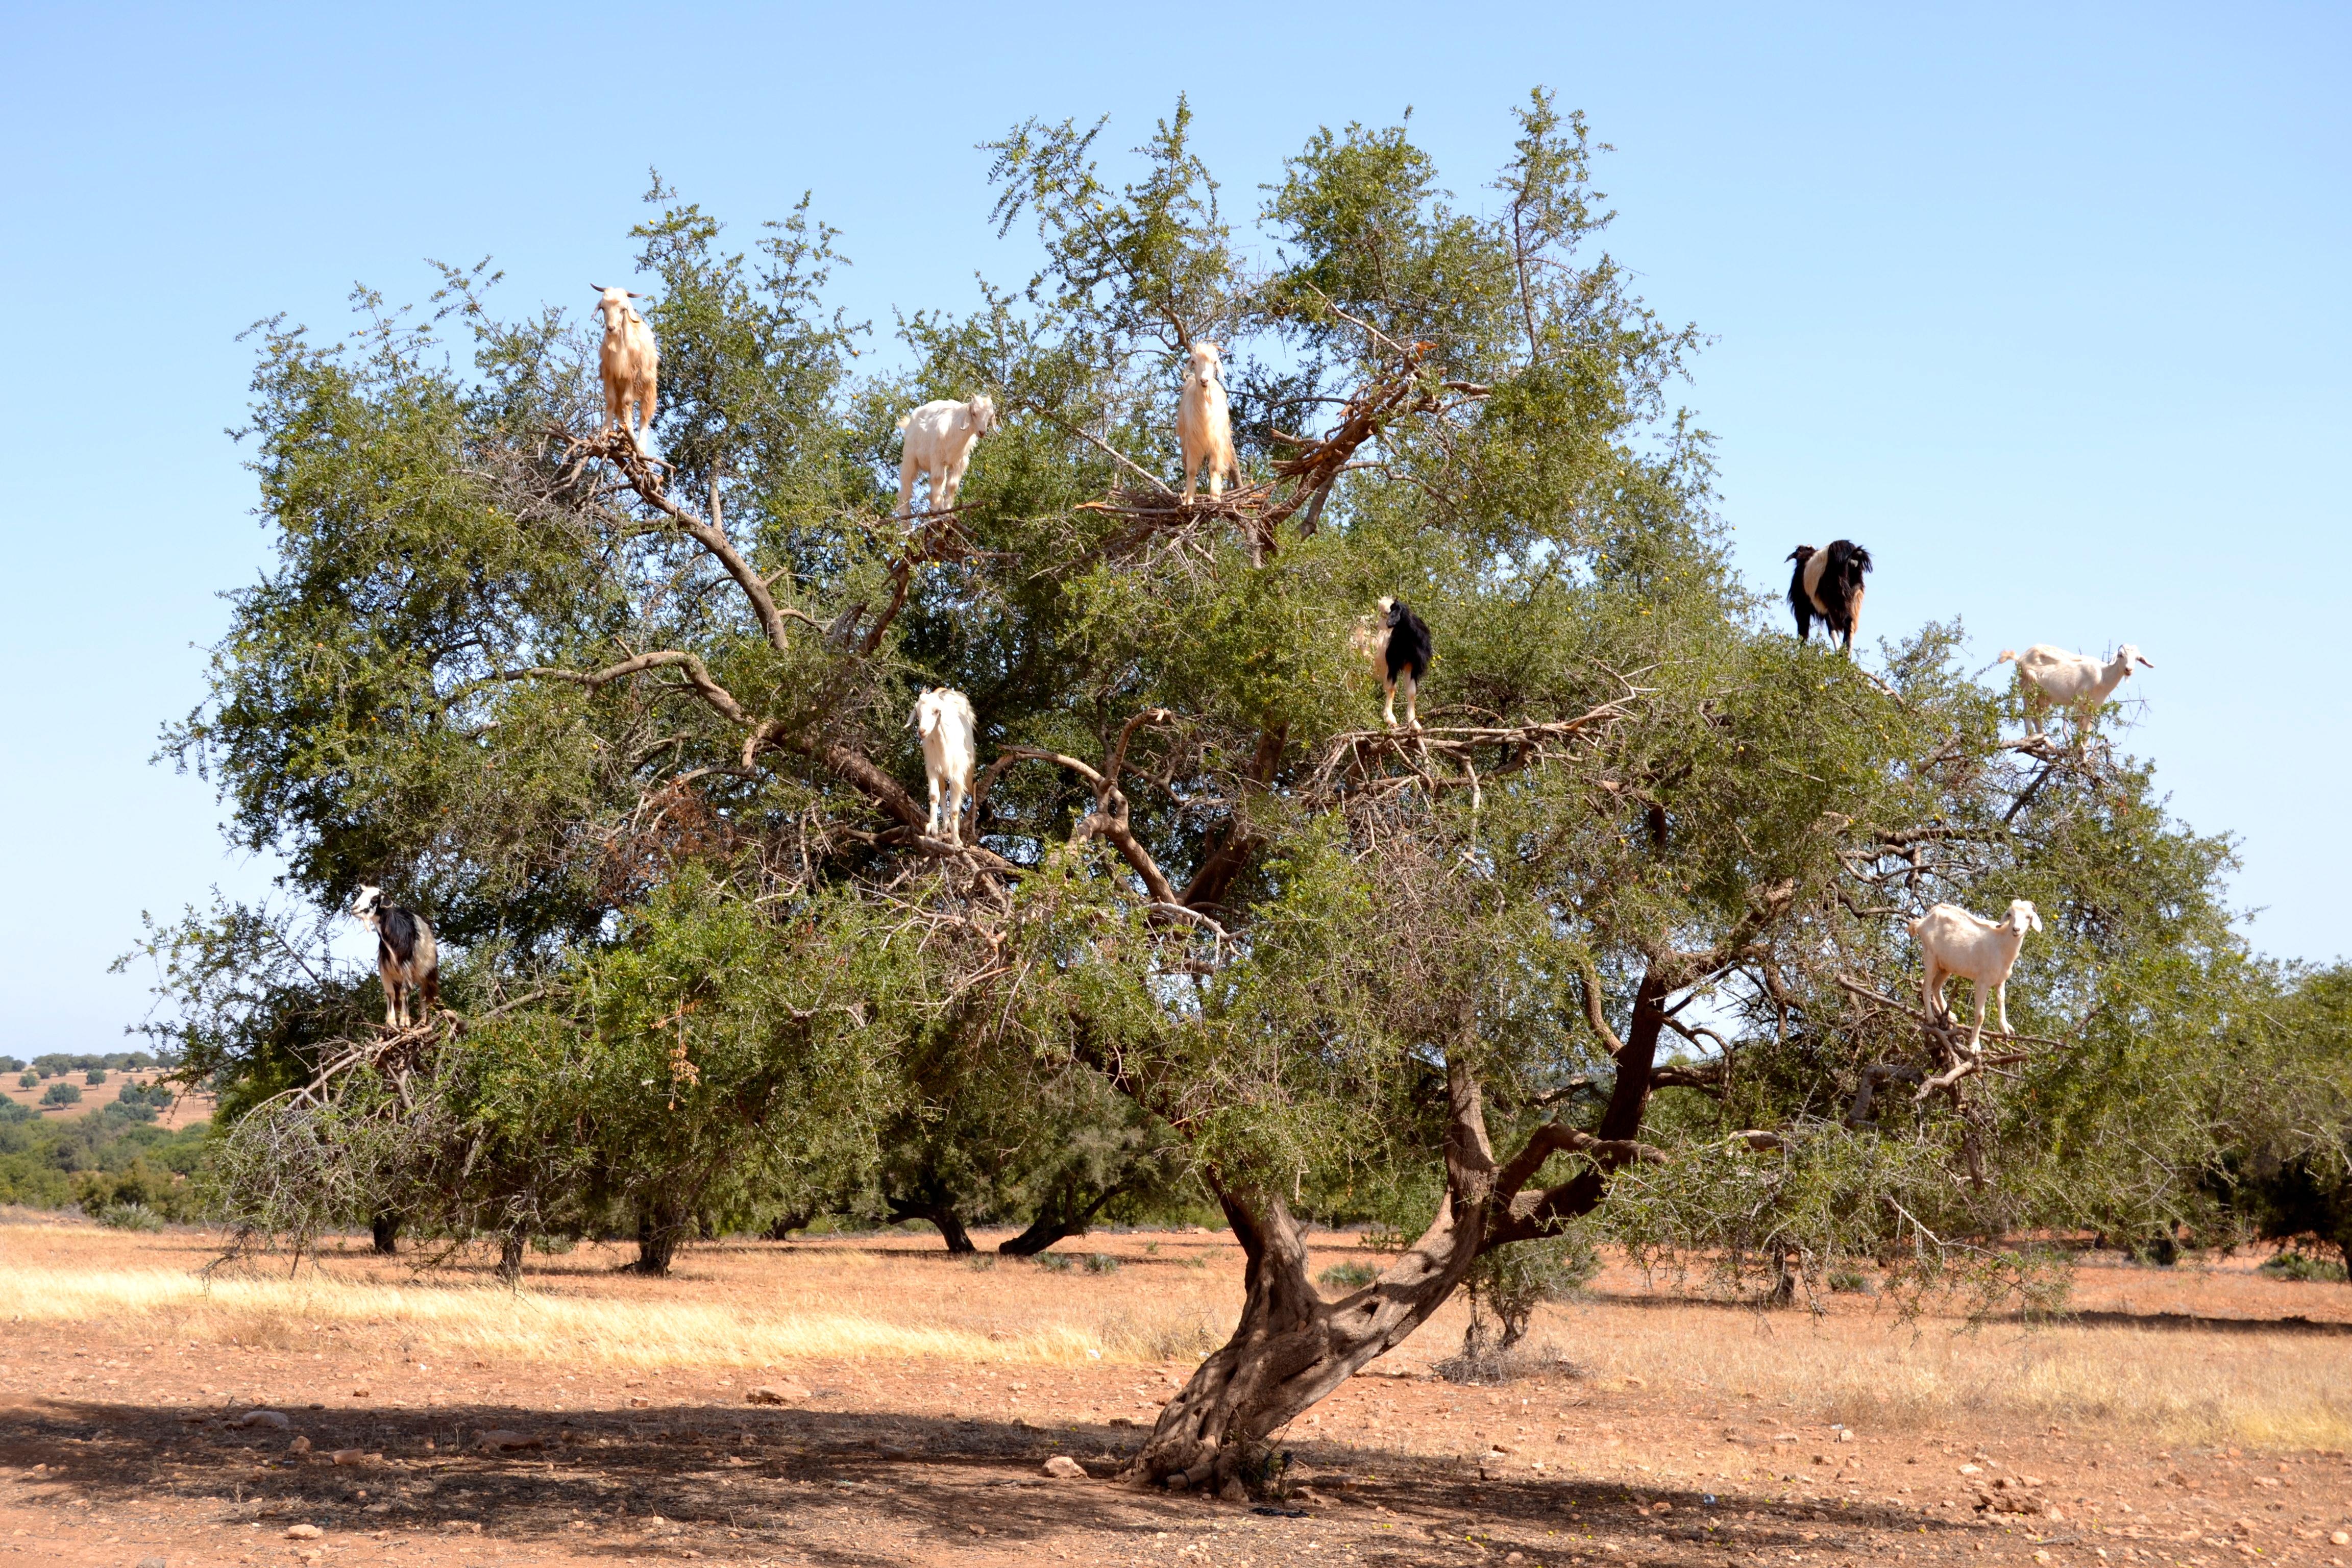 这种只生长在摩洛哥的阿甘树,最少需要种植40年才能结果 argan trees